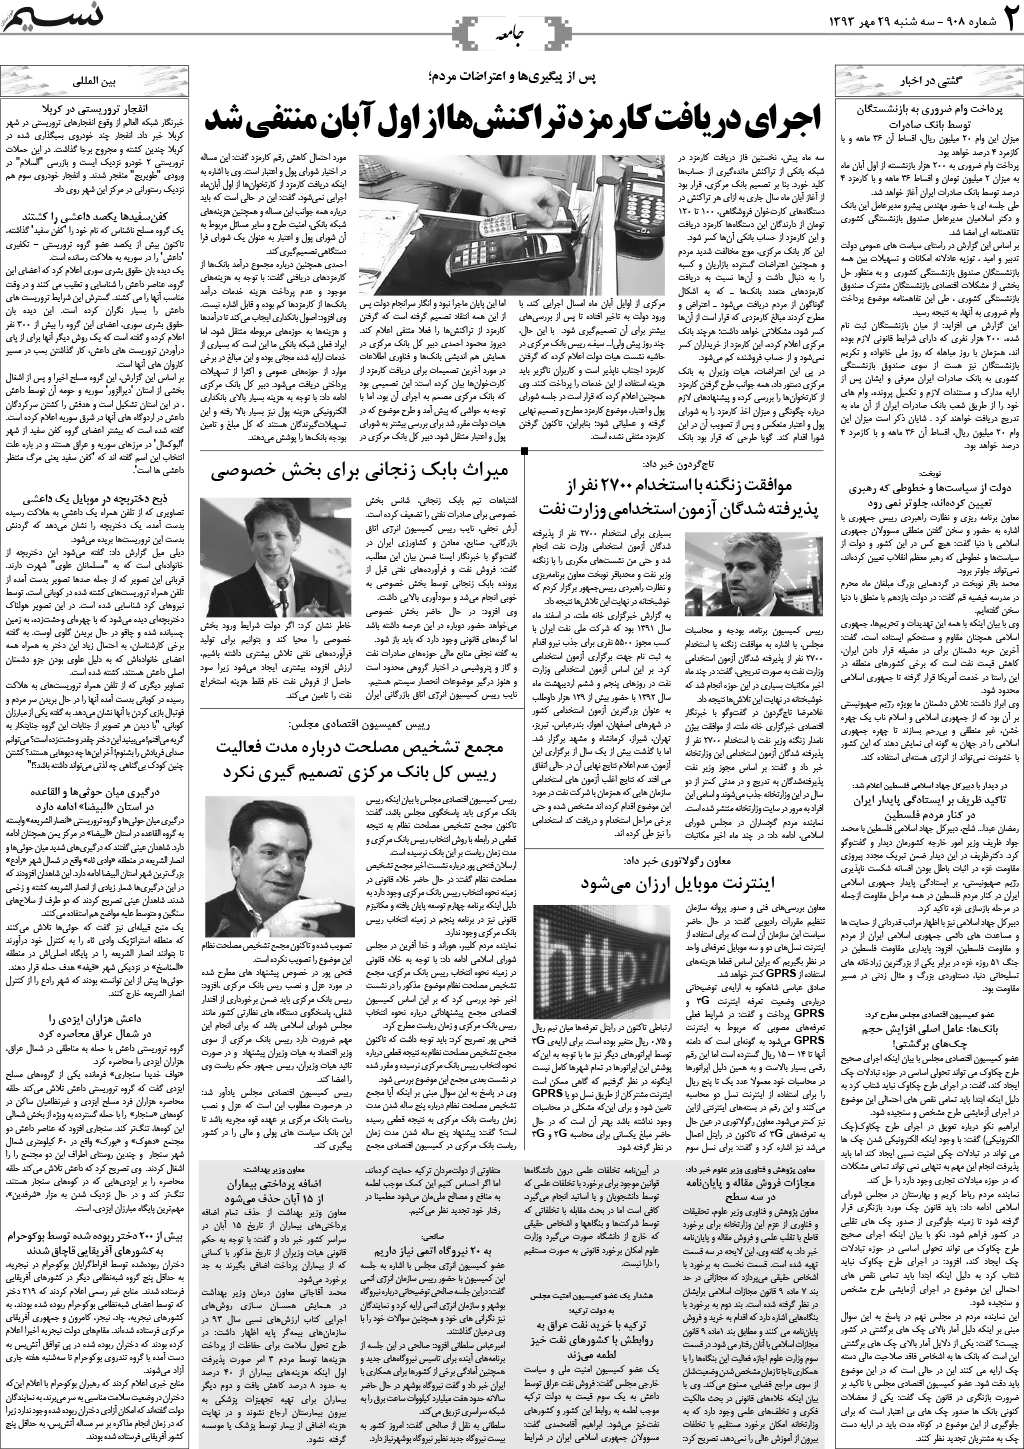 صفحه جامعه روزنامه نسیم شماره 908